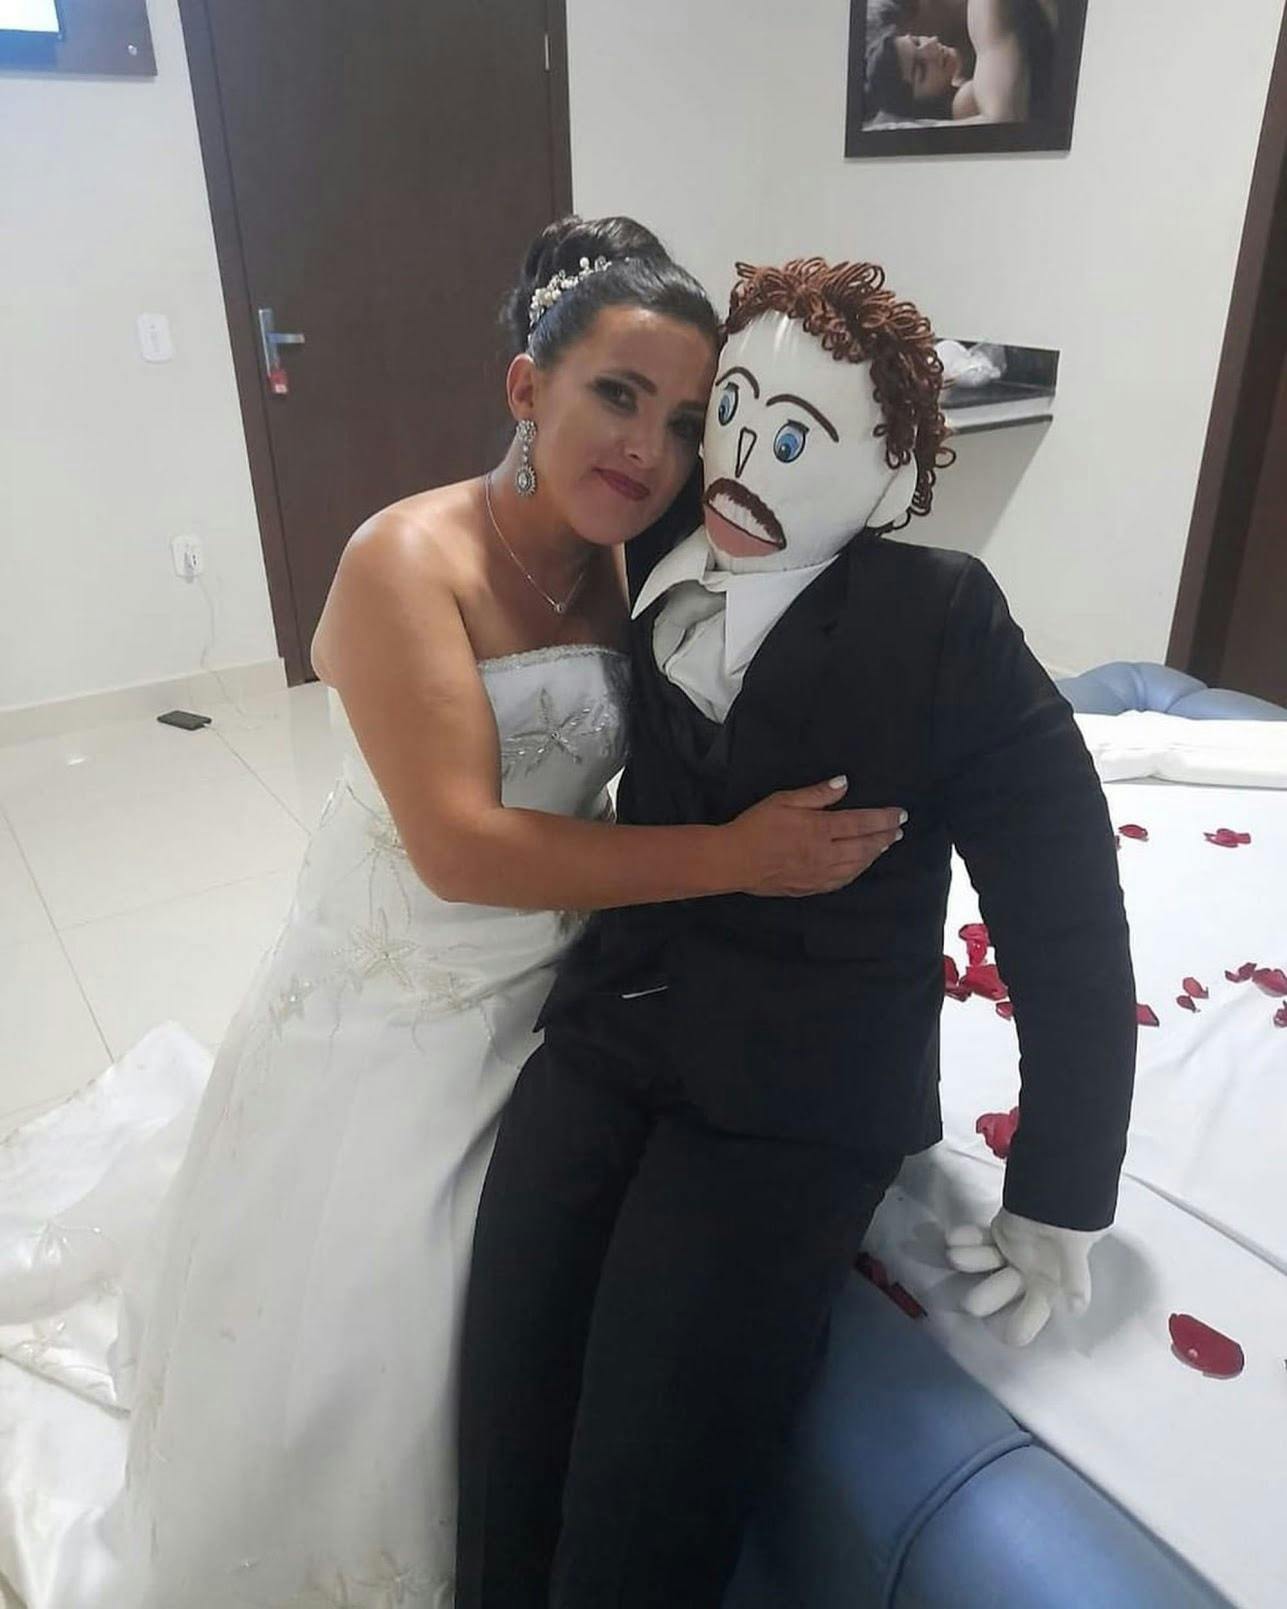 Meirivone Rocha Moraes sammen med dukken Marcelo. Han skændes aldrig med hende, men er til gengæld luddoven ifølge den 37-årige kvinde